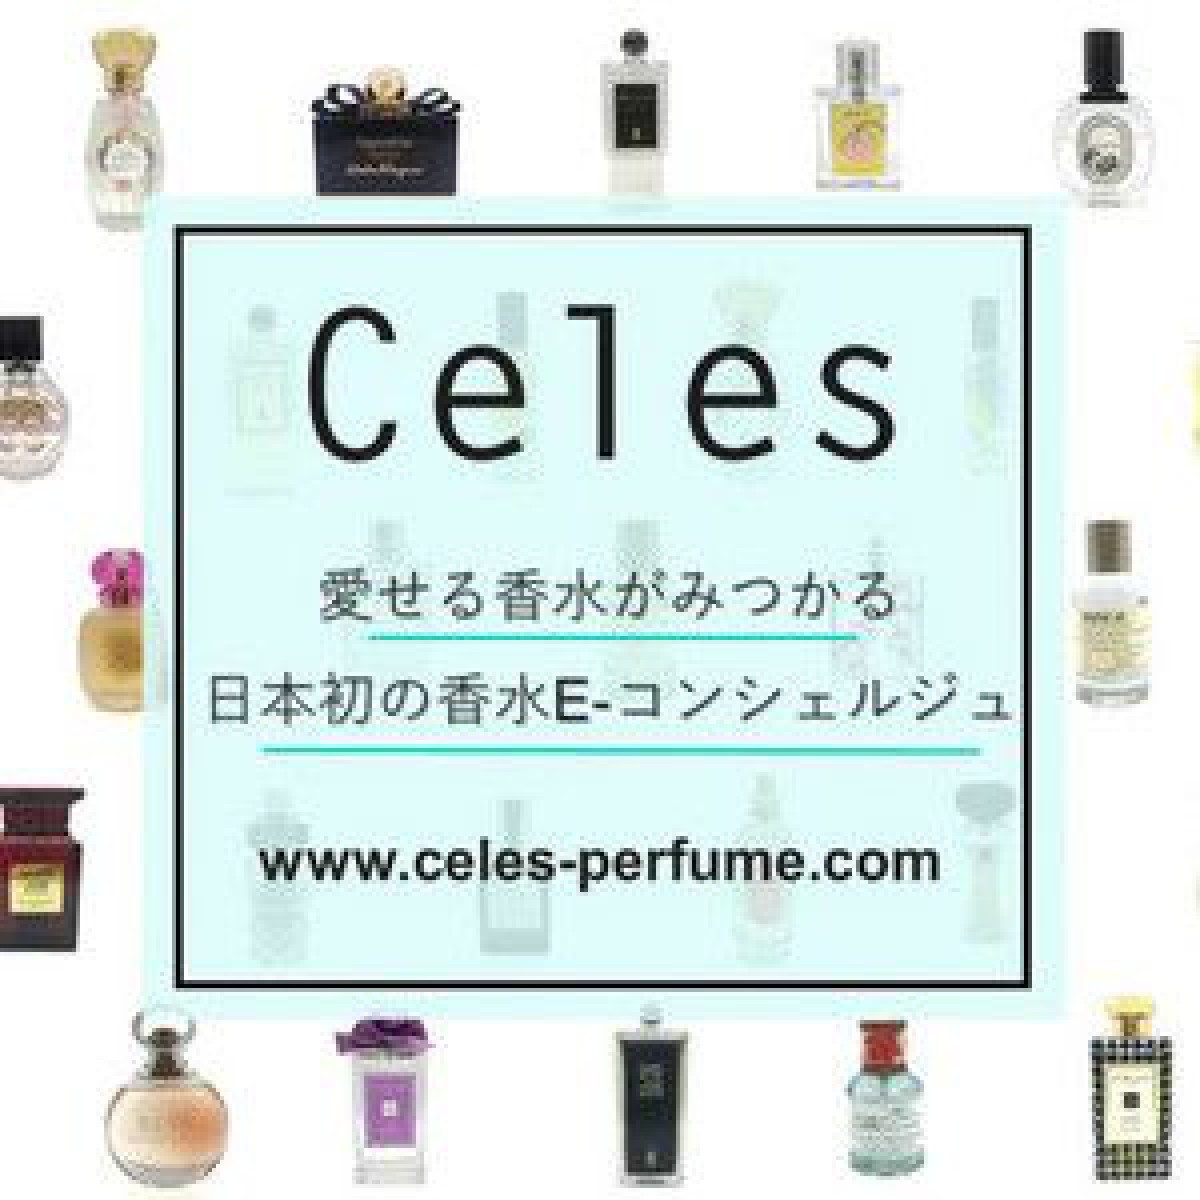 自分に合う香りが見つかる、日本初のネット香水提案サービス「セレスのセレクト」始動